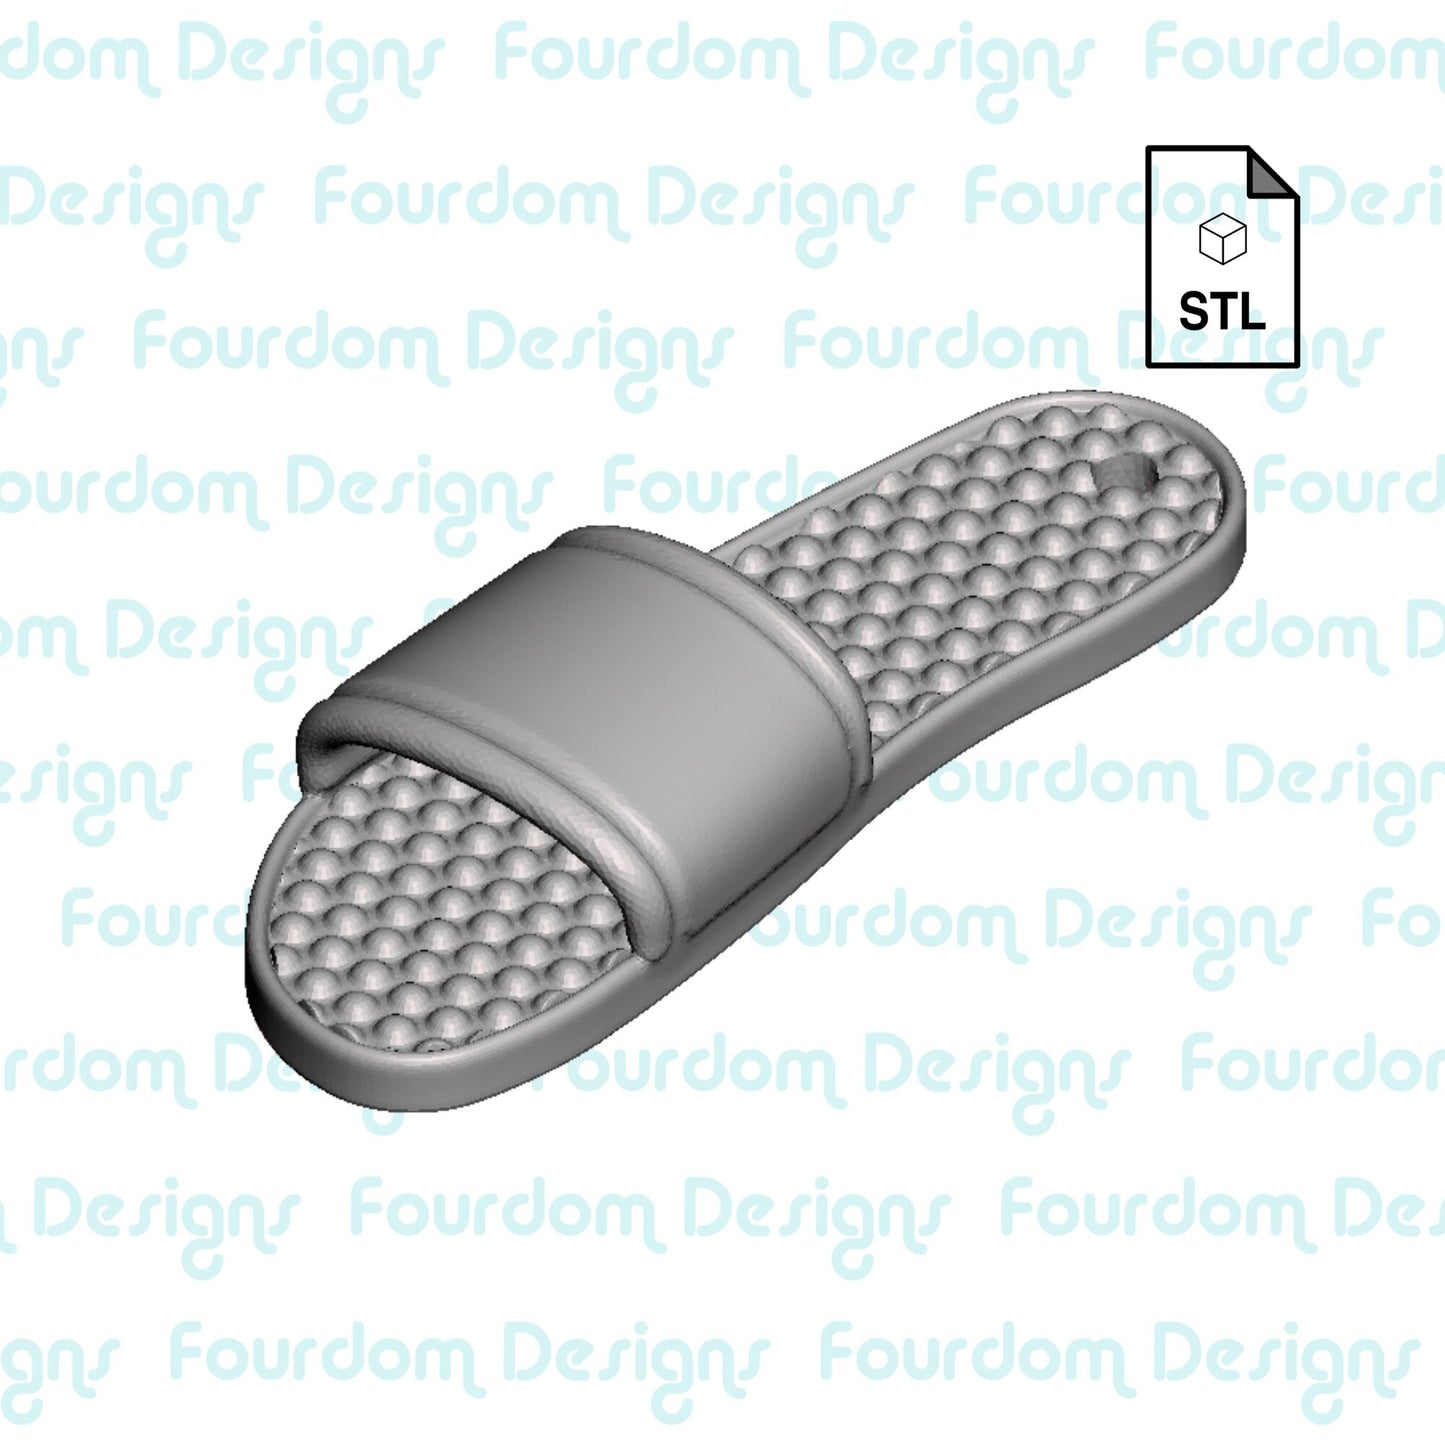 Sandal Flip Flop Keychain STL File for 3D Printing - Digital Download